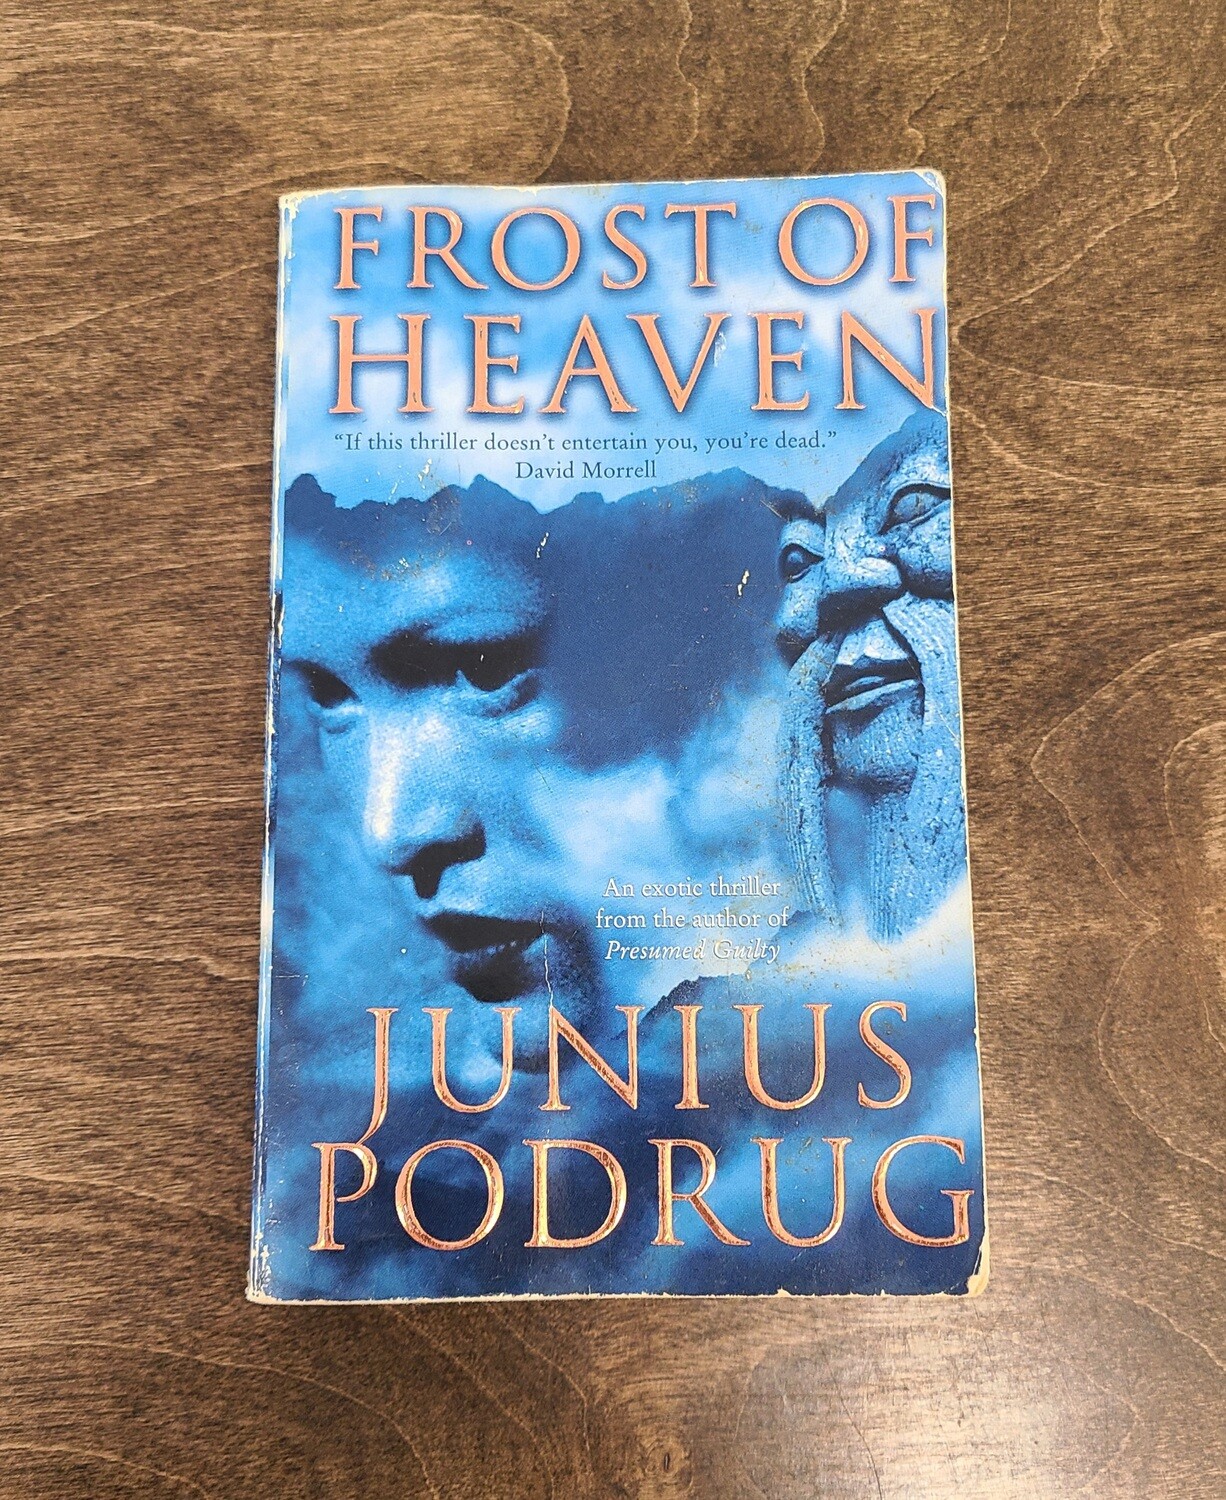 Frost of Heaven by Junius Podrug